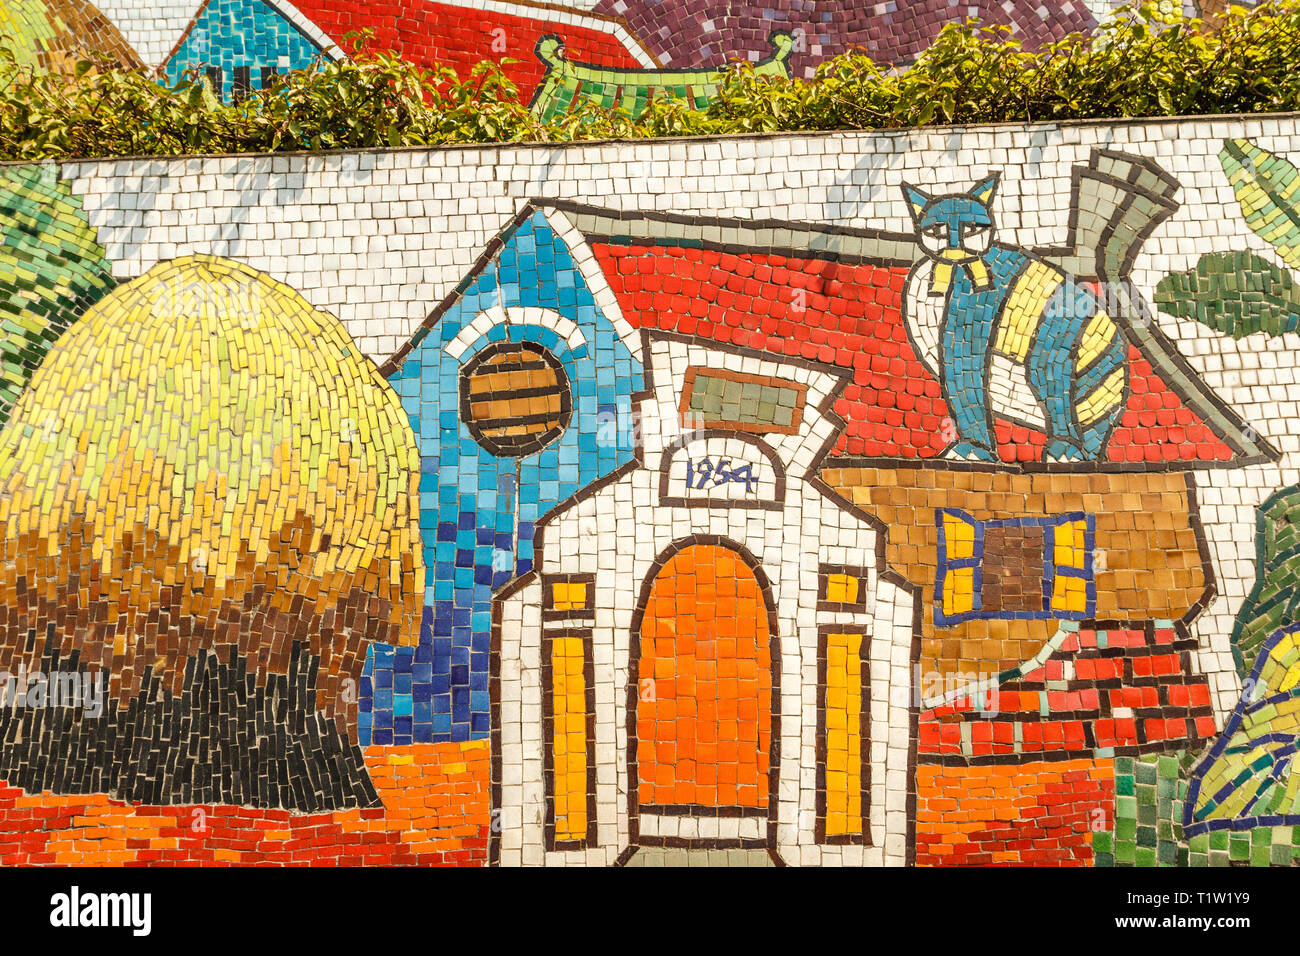 Mosaïque murale céramique Hanoi Hanoi ou route en céramique. Le Vietnam. Dépeignant des scènes de village. Le plus long mur de céramique dans le monde entier, record Guinness. Banque D'Images